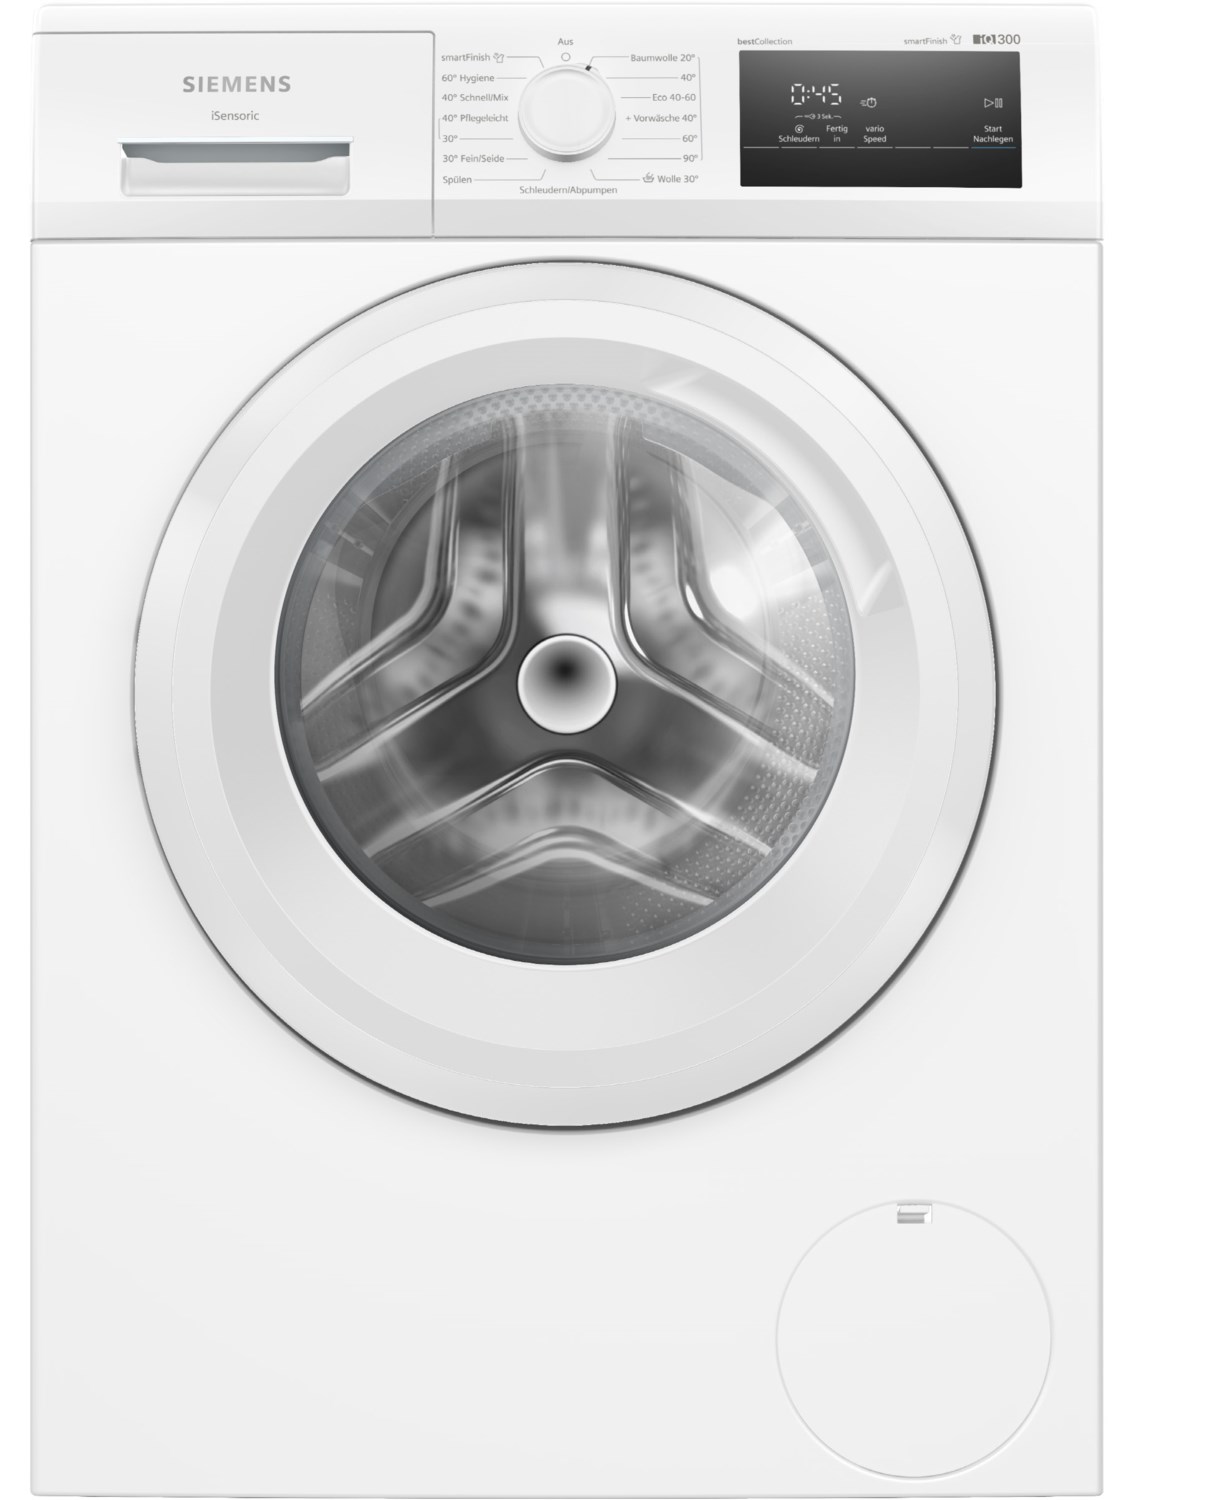 WM14N0H4 Stand-Waschmaschine-Frontlader weiß / A